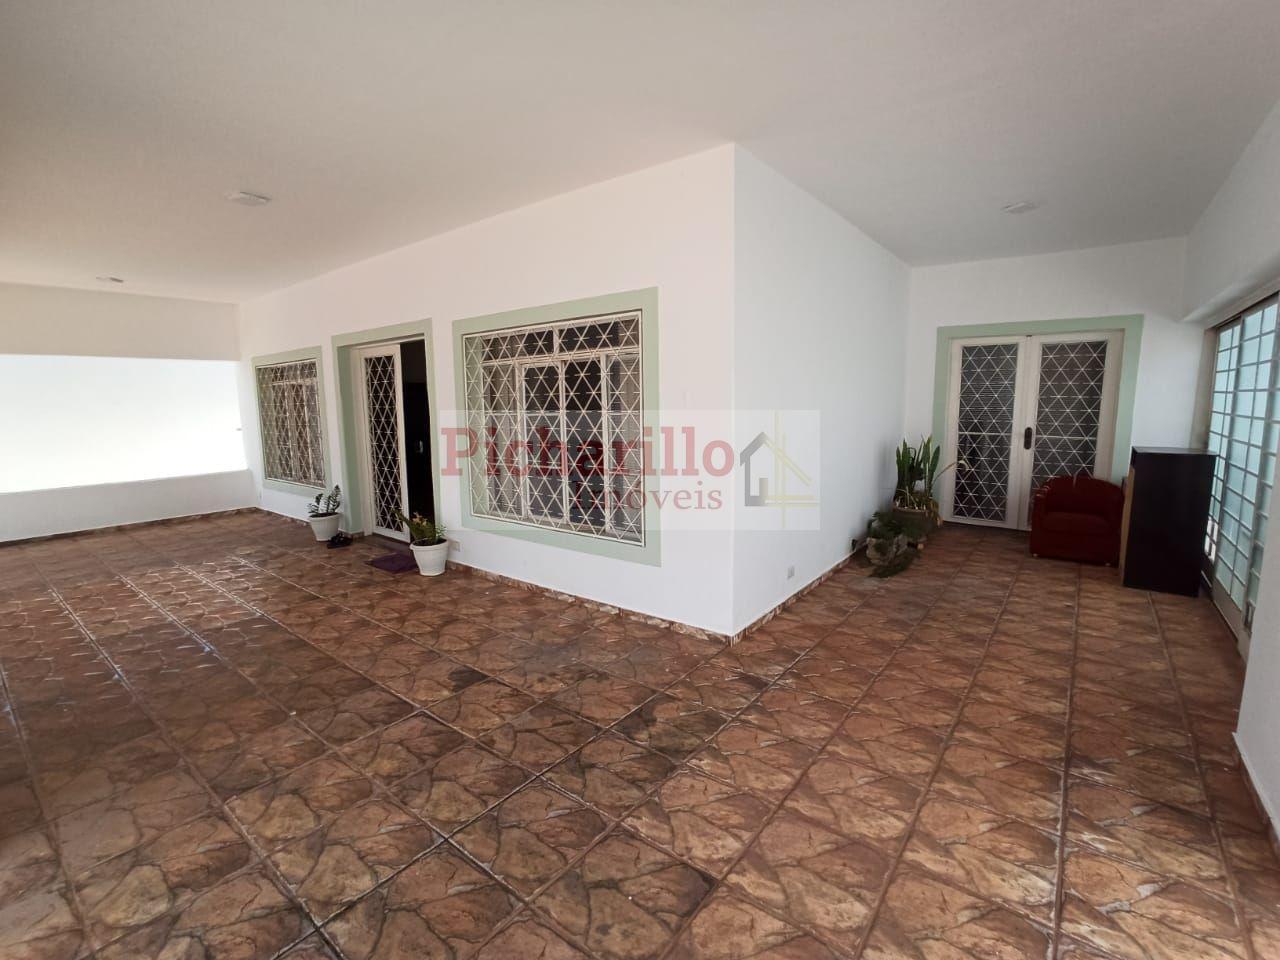 Casa com 3 dormitórios à venda, 351 m² por R$ 750.000 - Jardim Cardinalli - São Carlos/SP